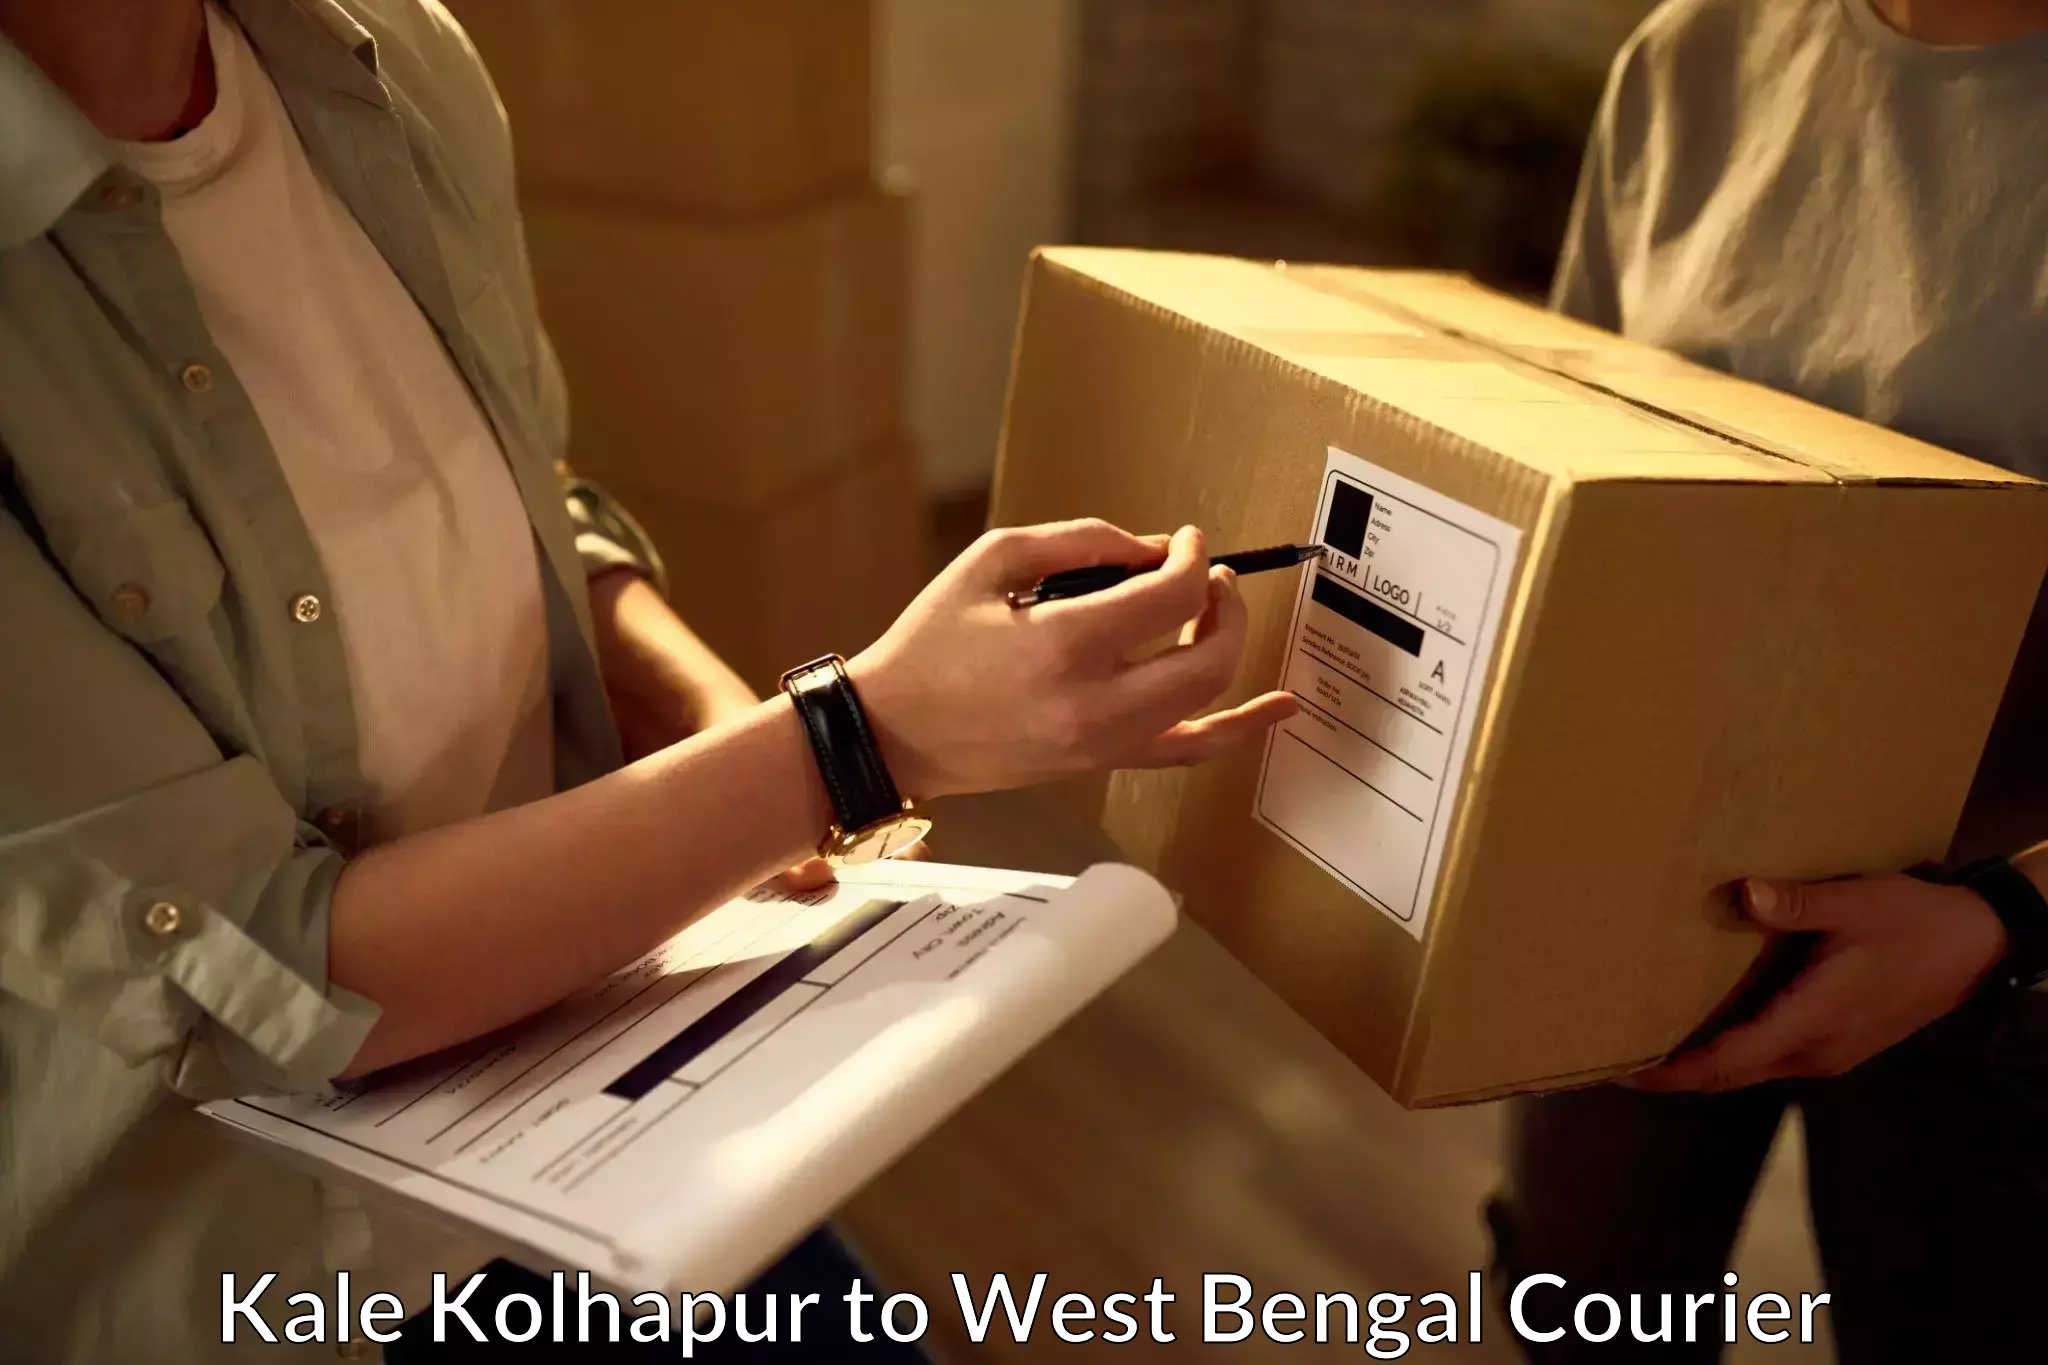 Efficient cargo handling Kale Kolhapur to South 24 Parganas